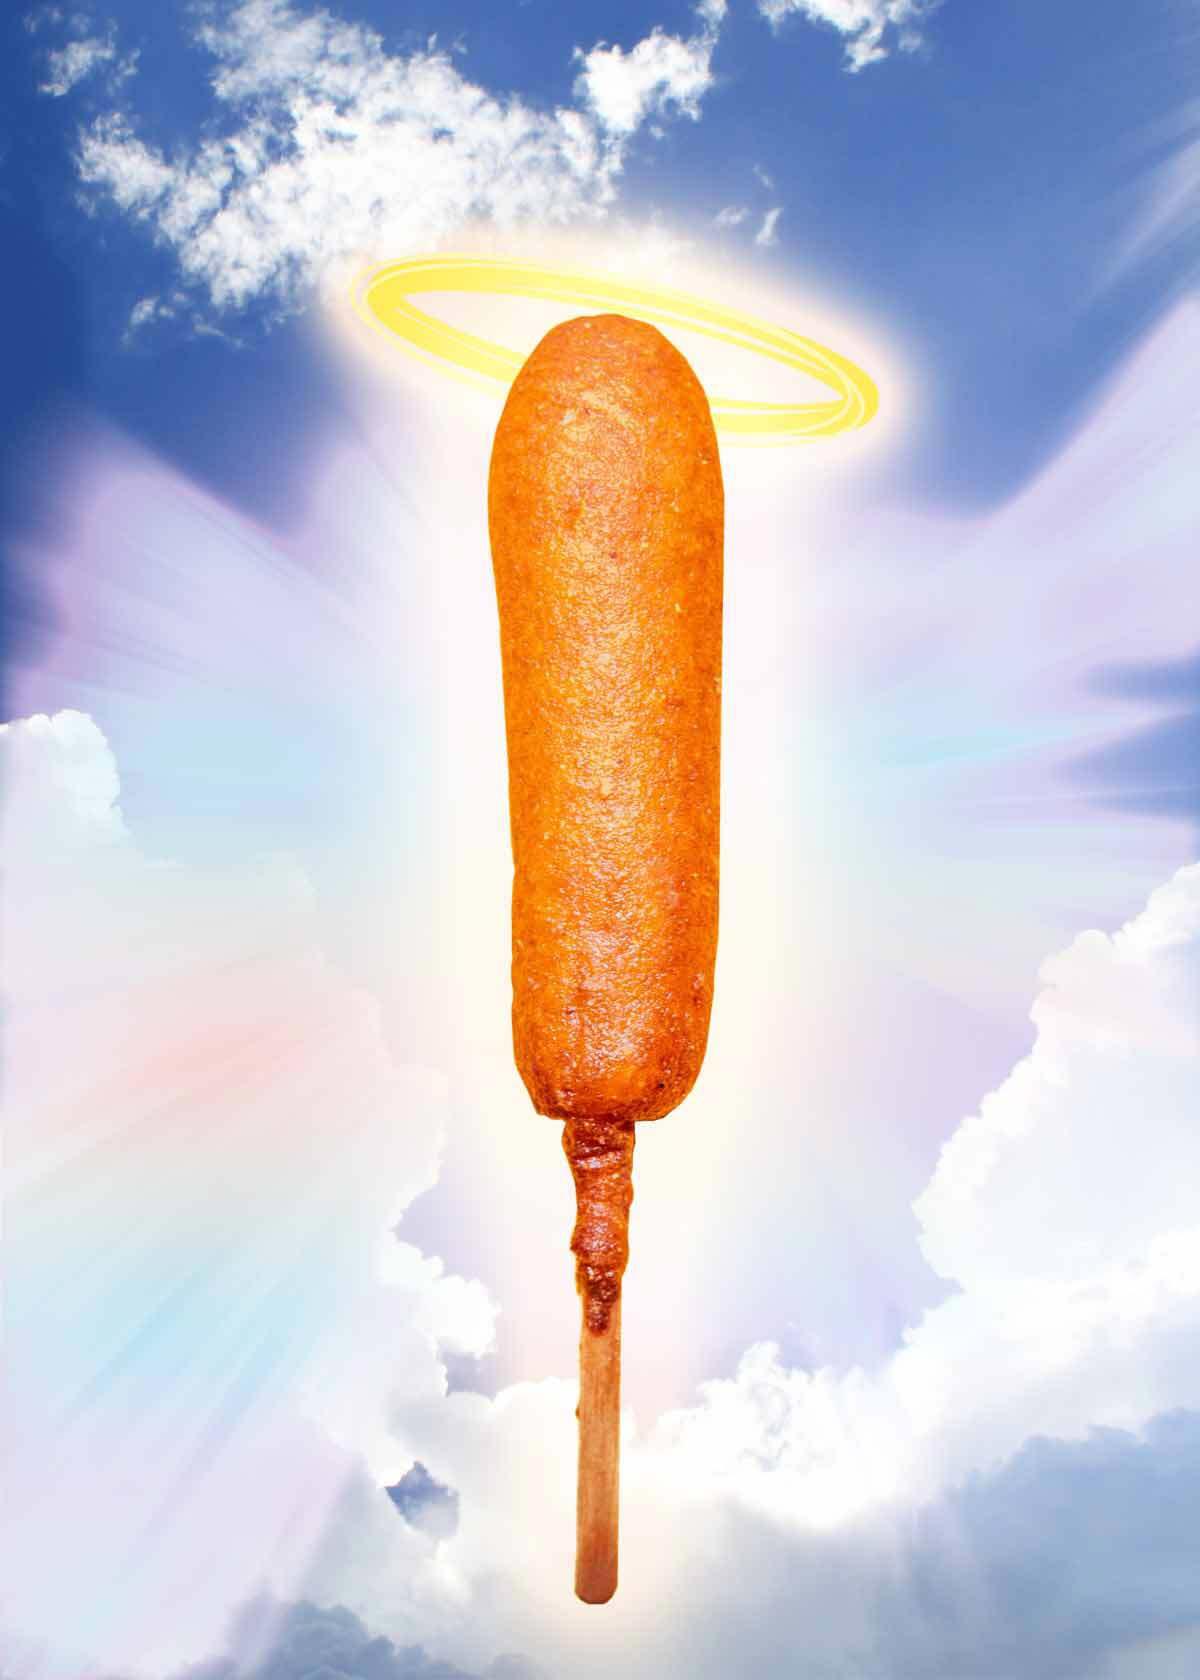 a corndog with a halo on a heavenly sky